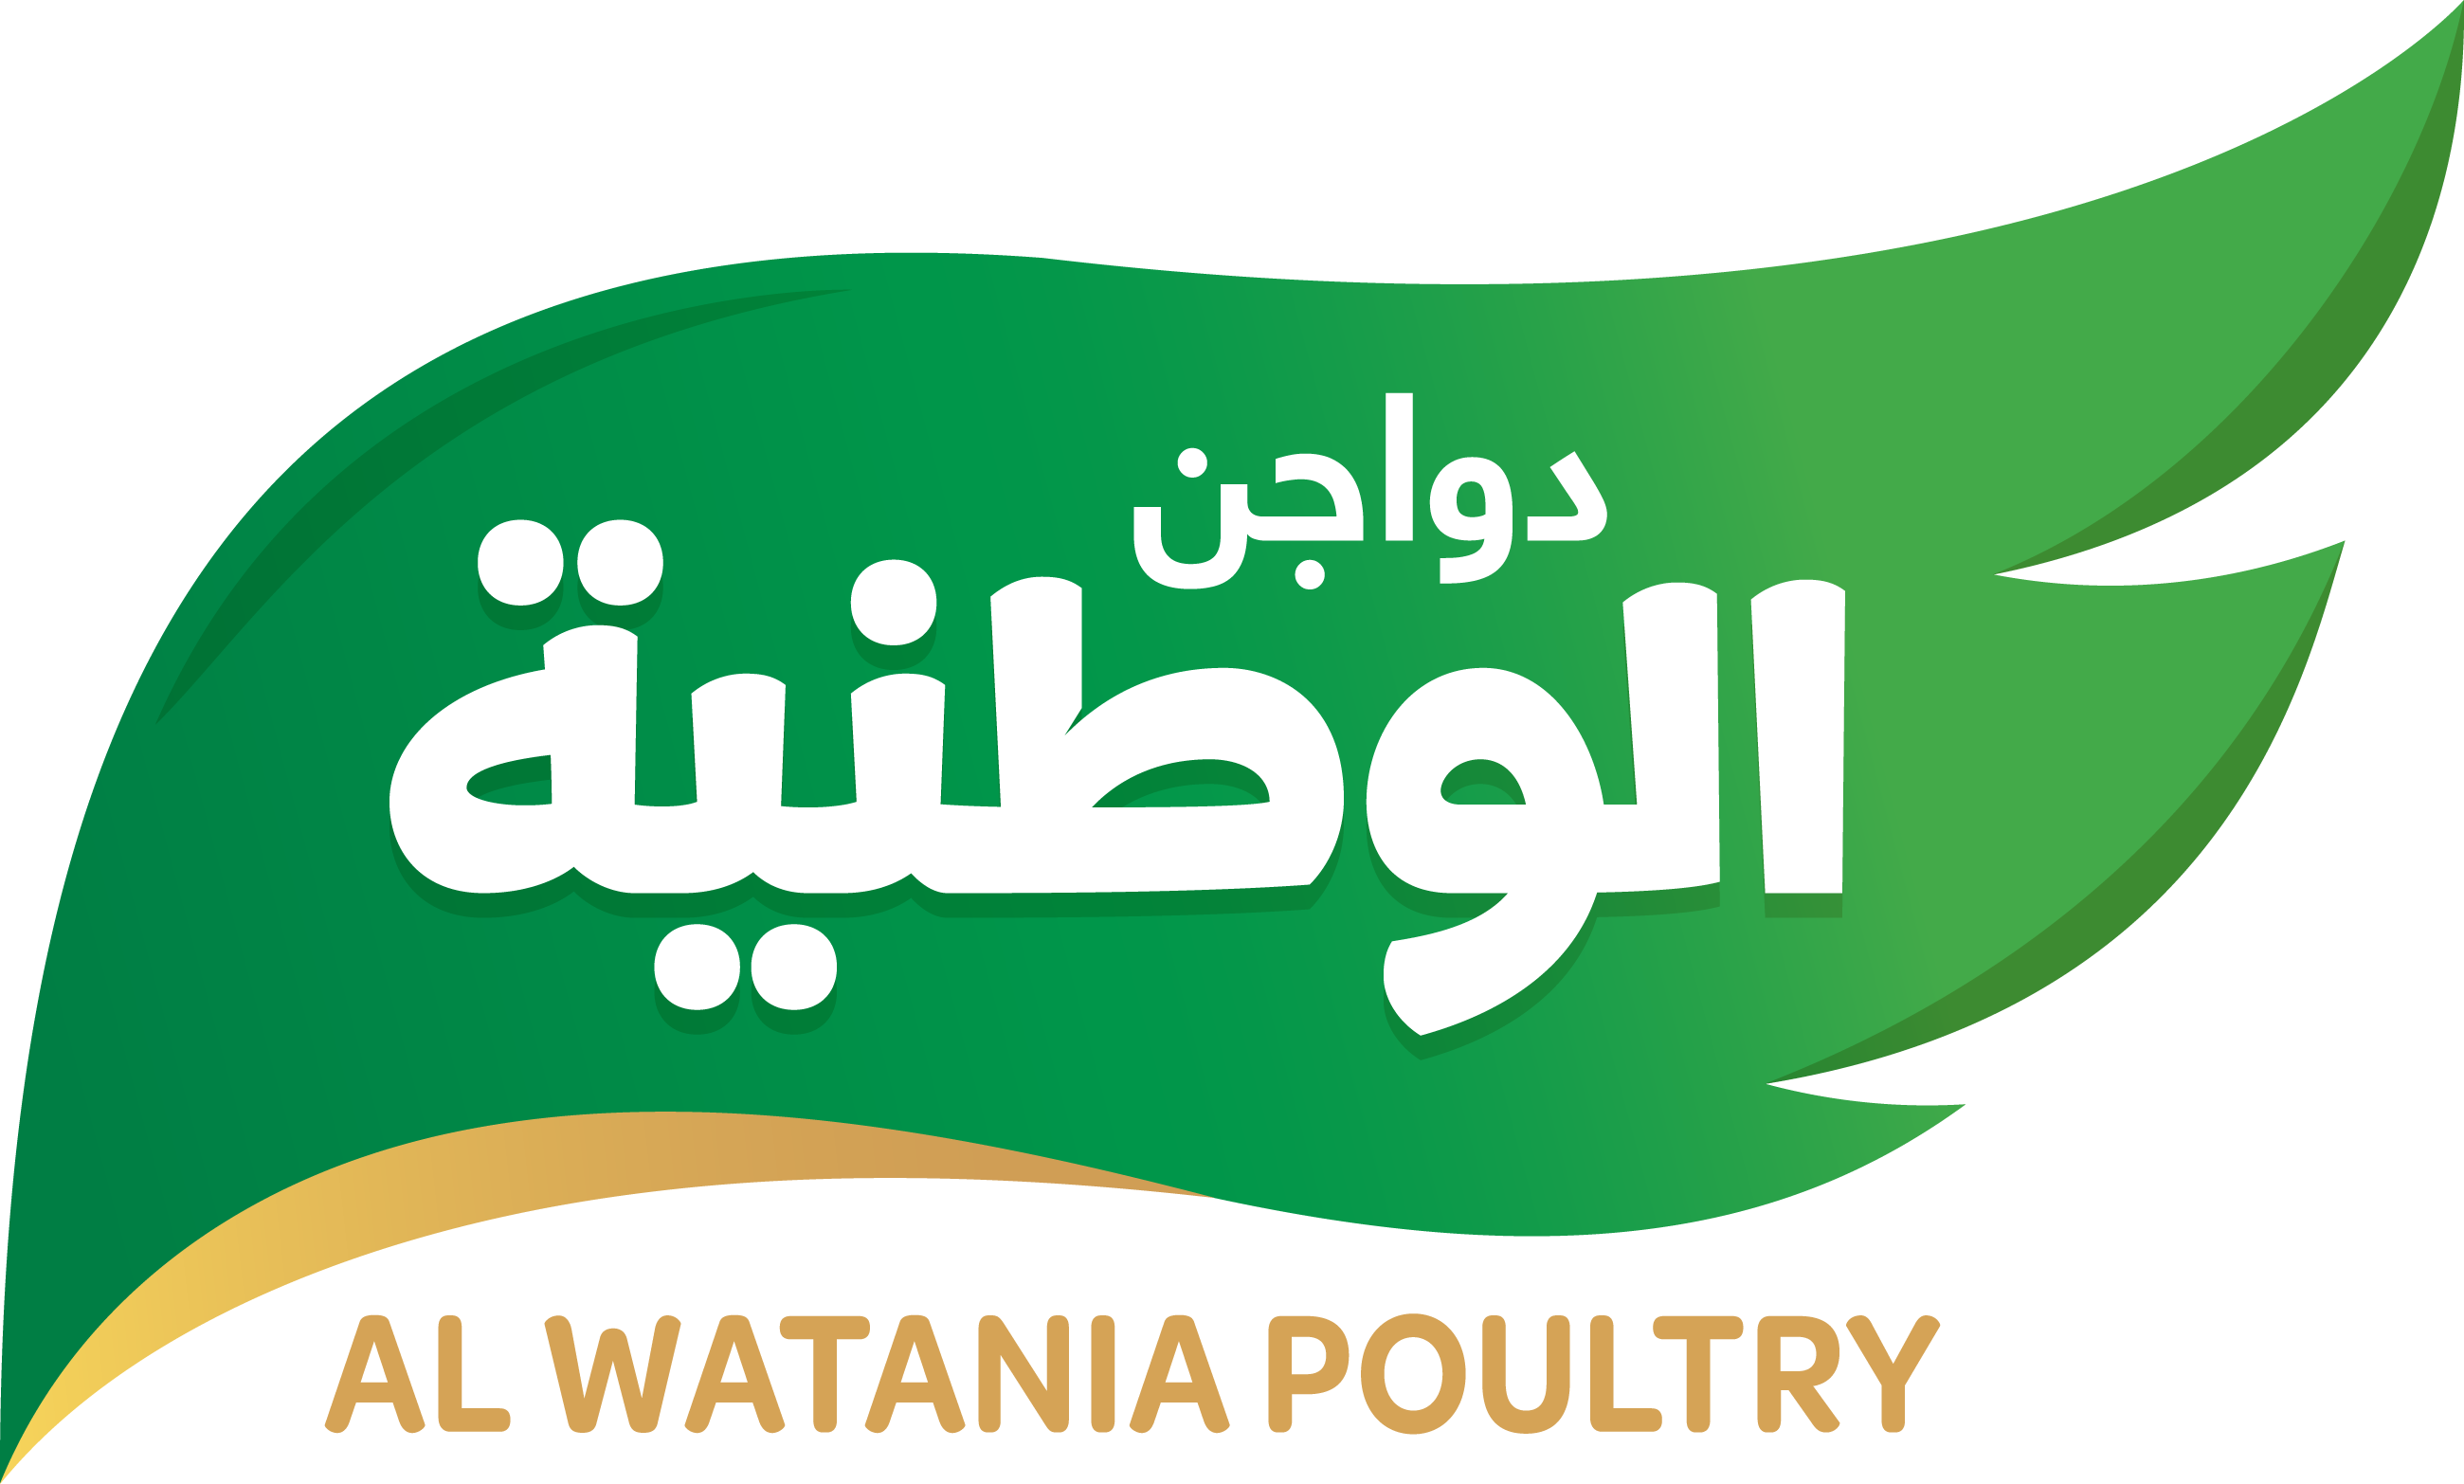 Al Watania Poultry logo